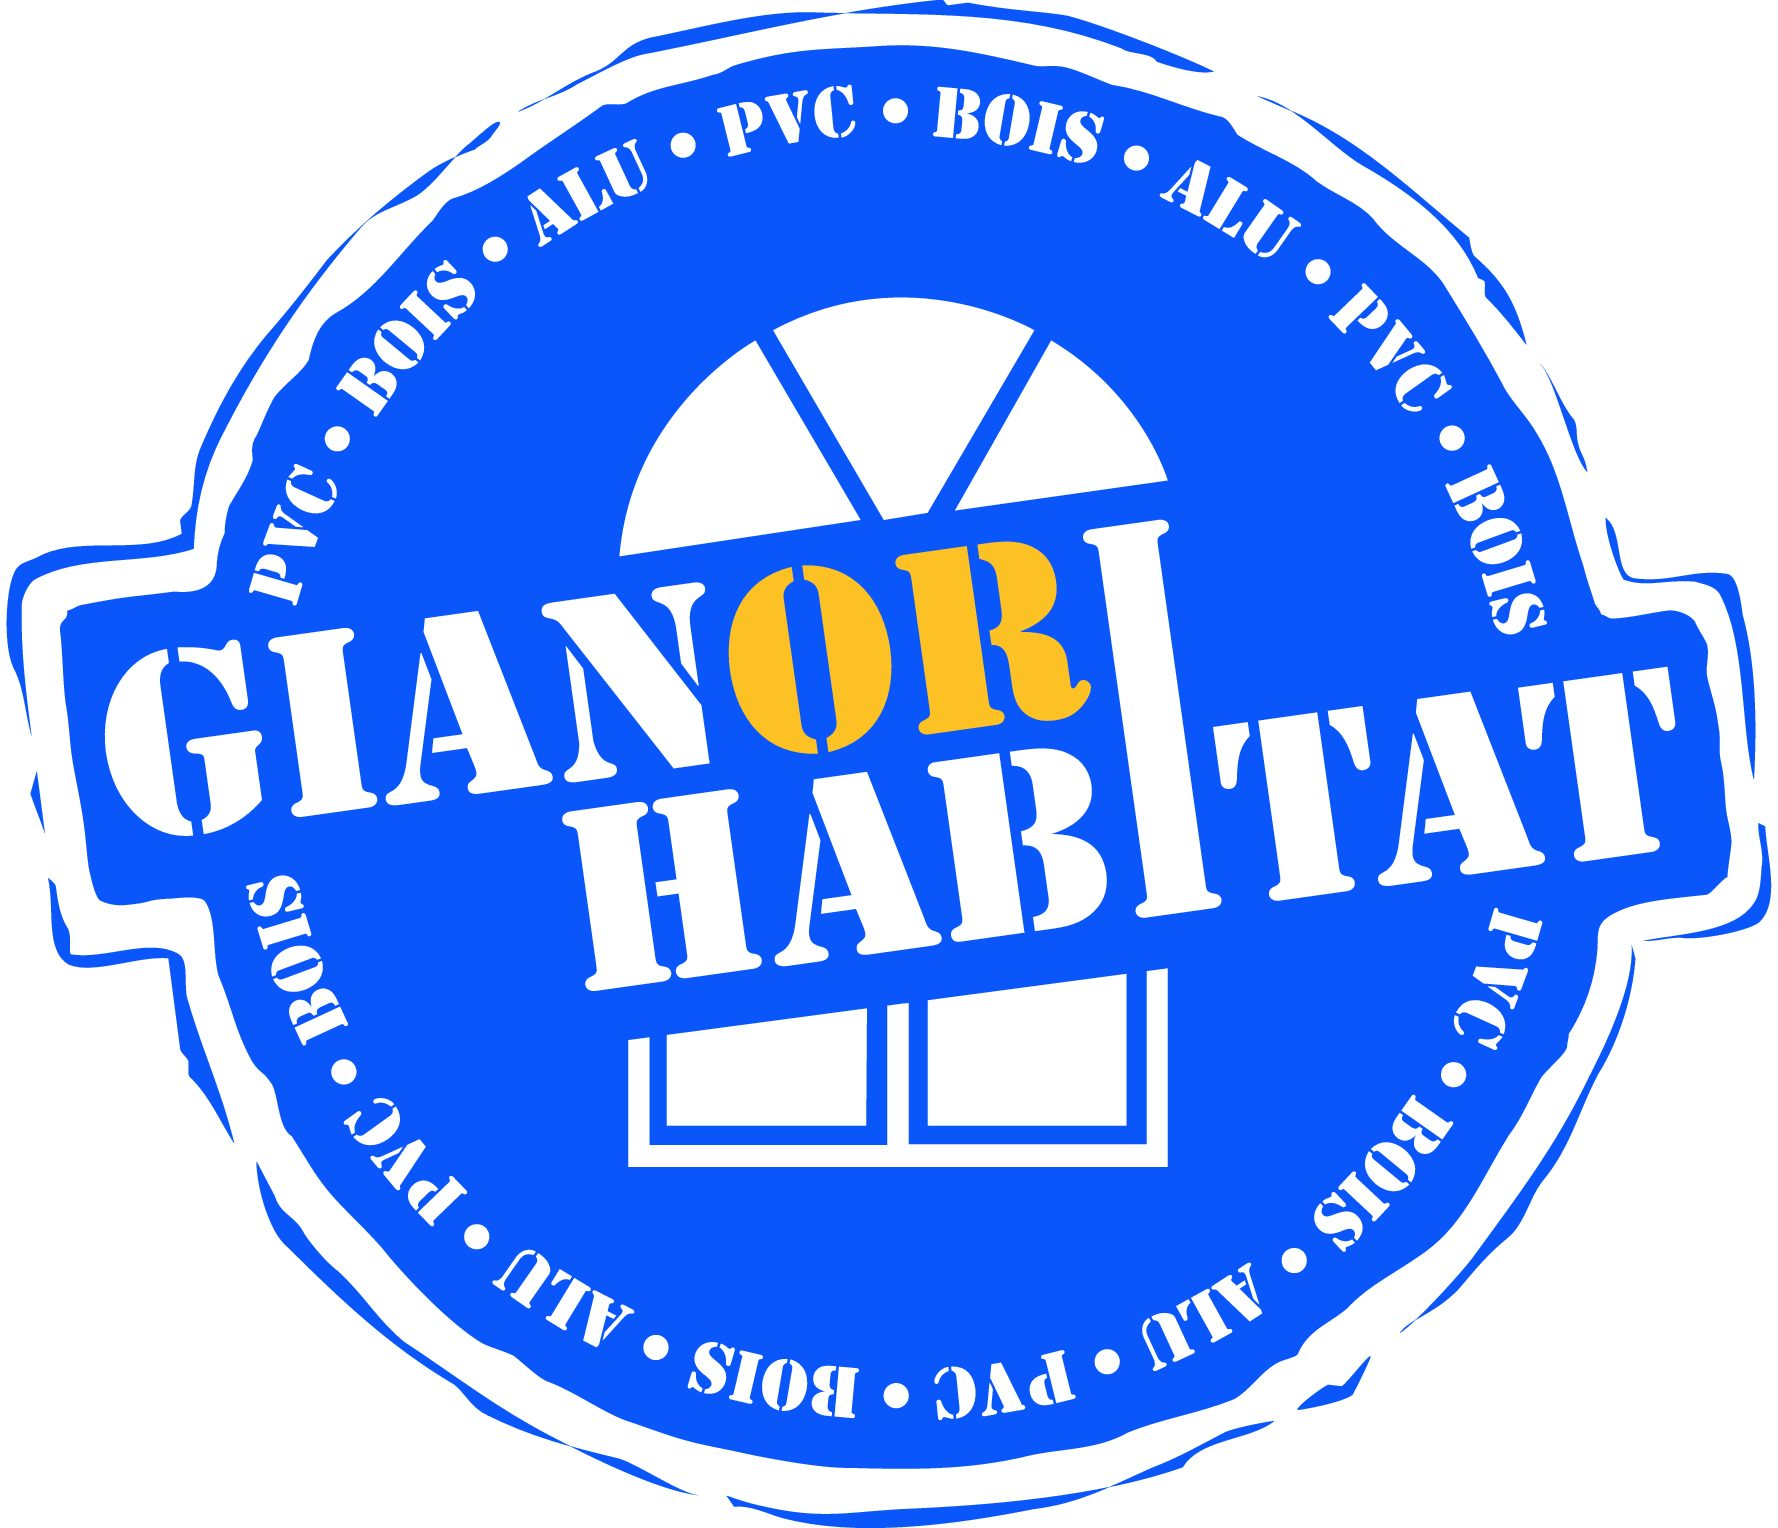 Gianori Habitat